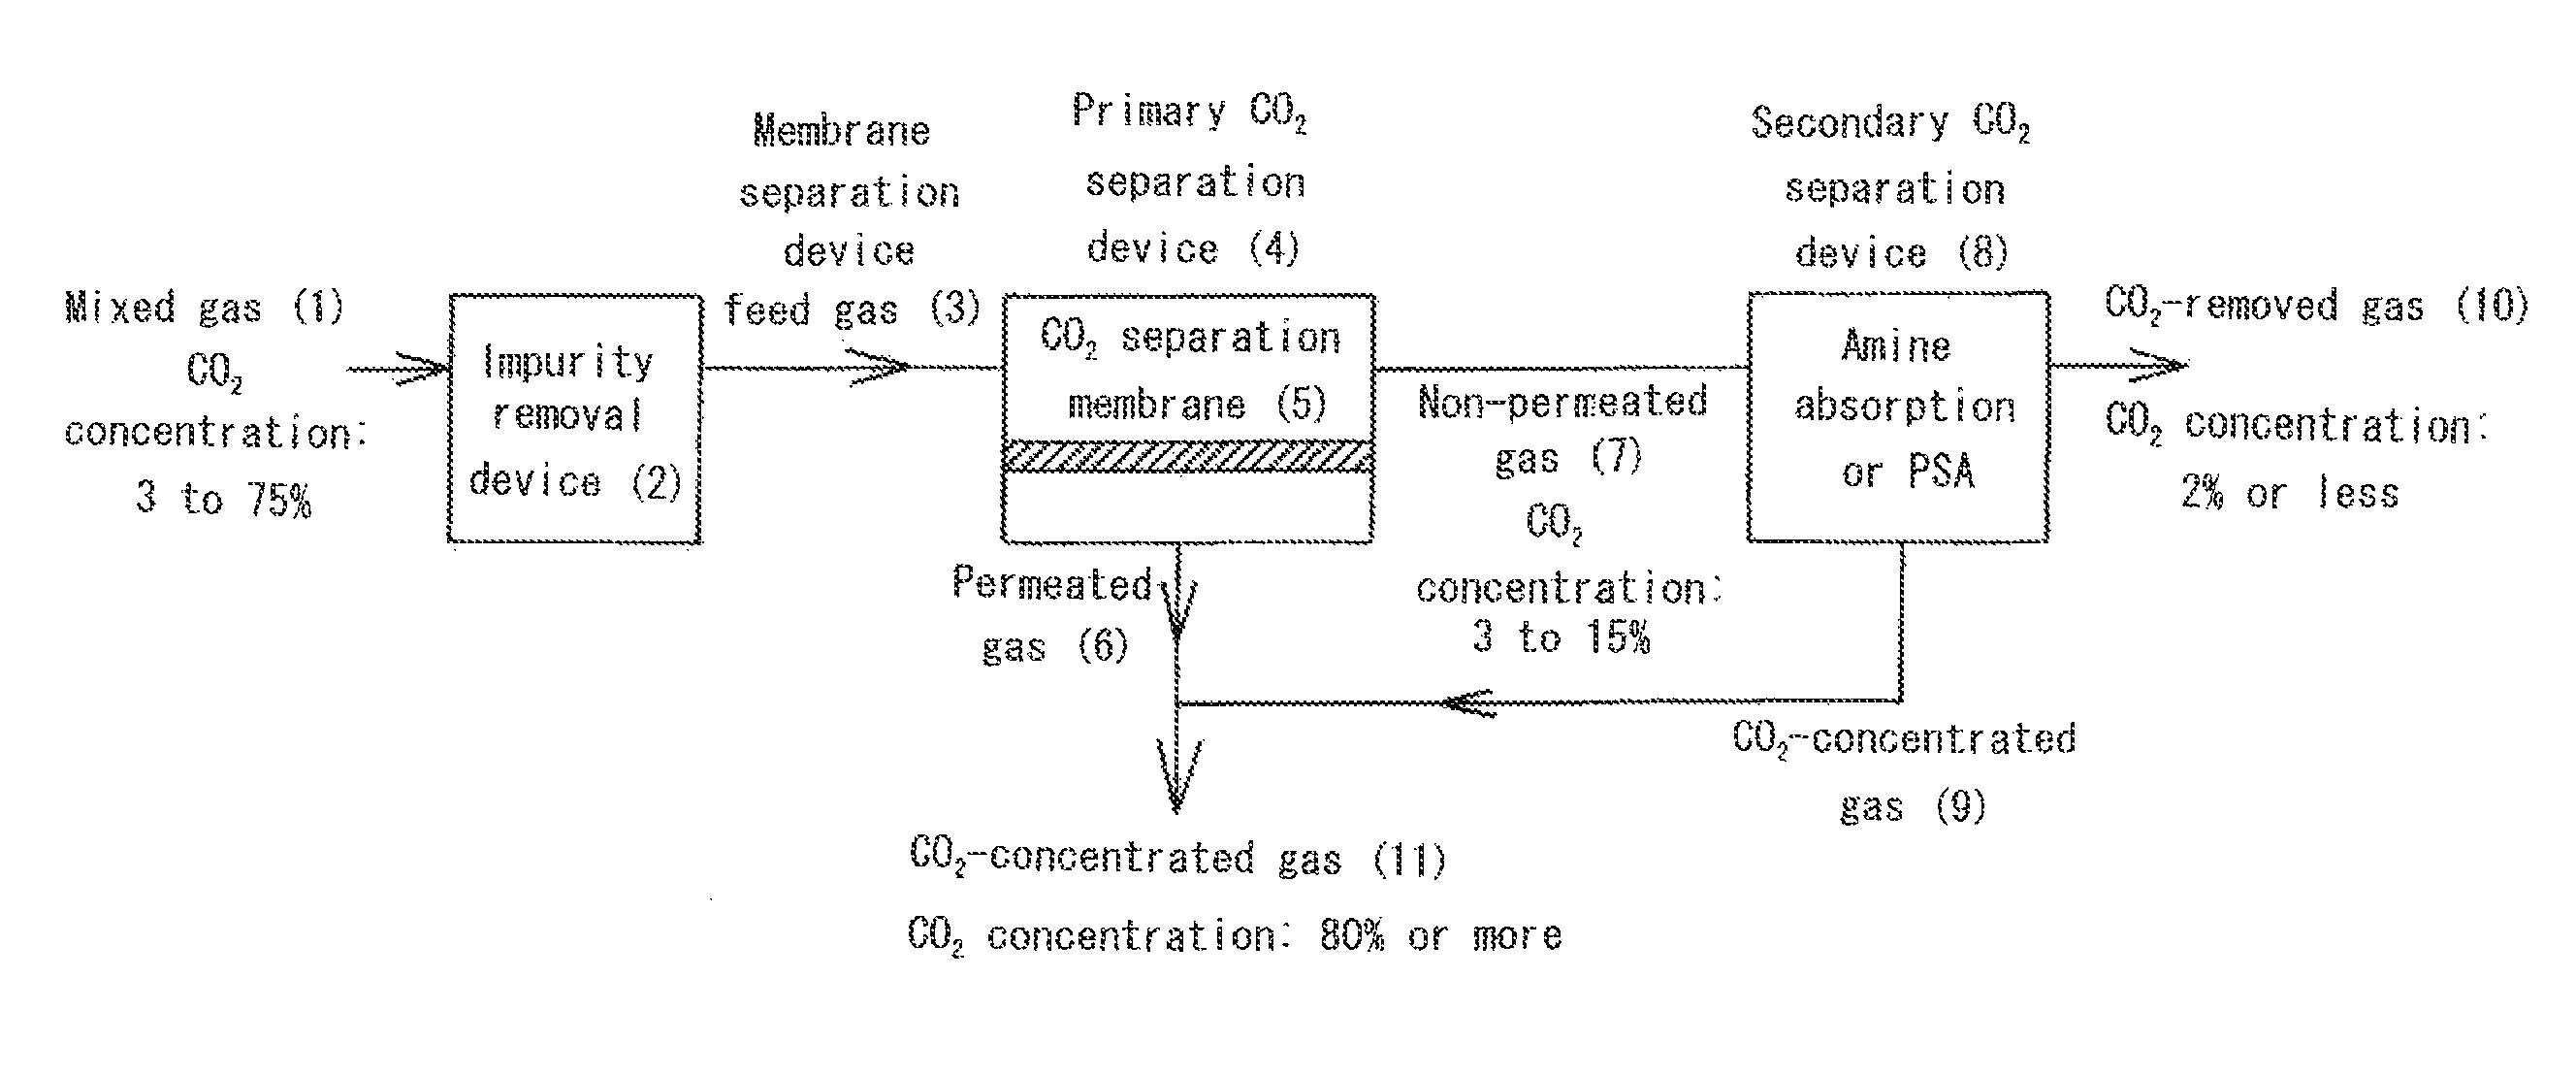 Carbon dioxide separation system